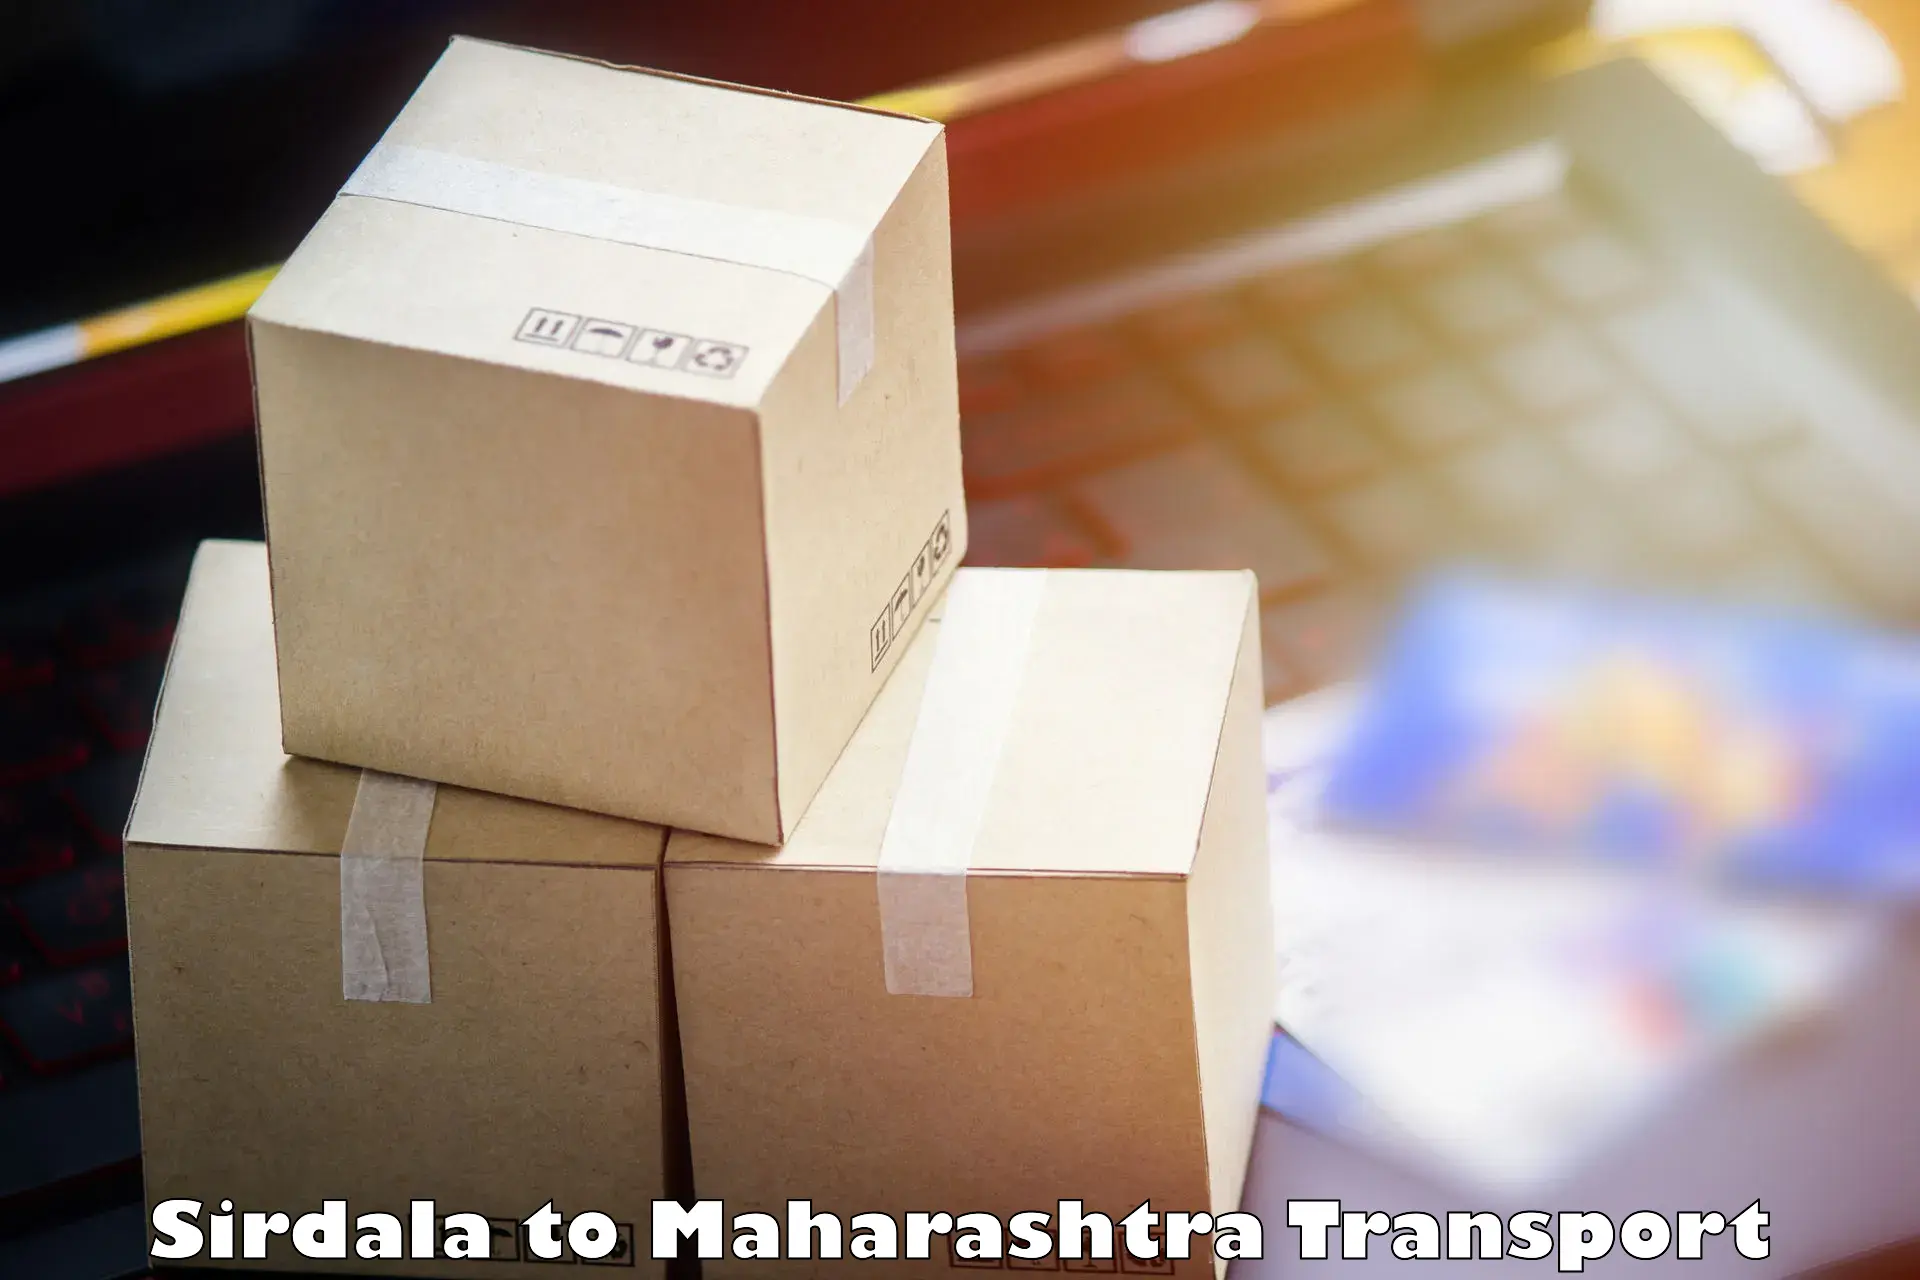 Commercial transport service Sirdala to Walchandnagar